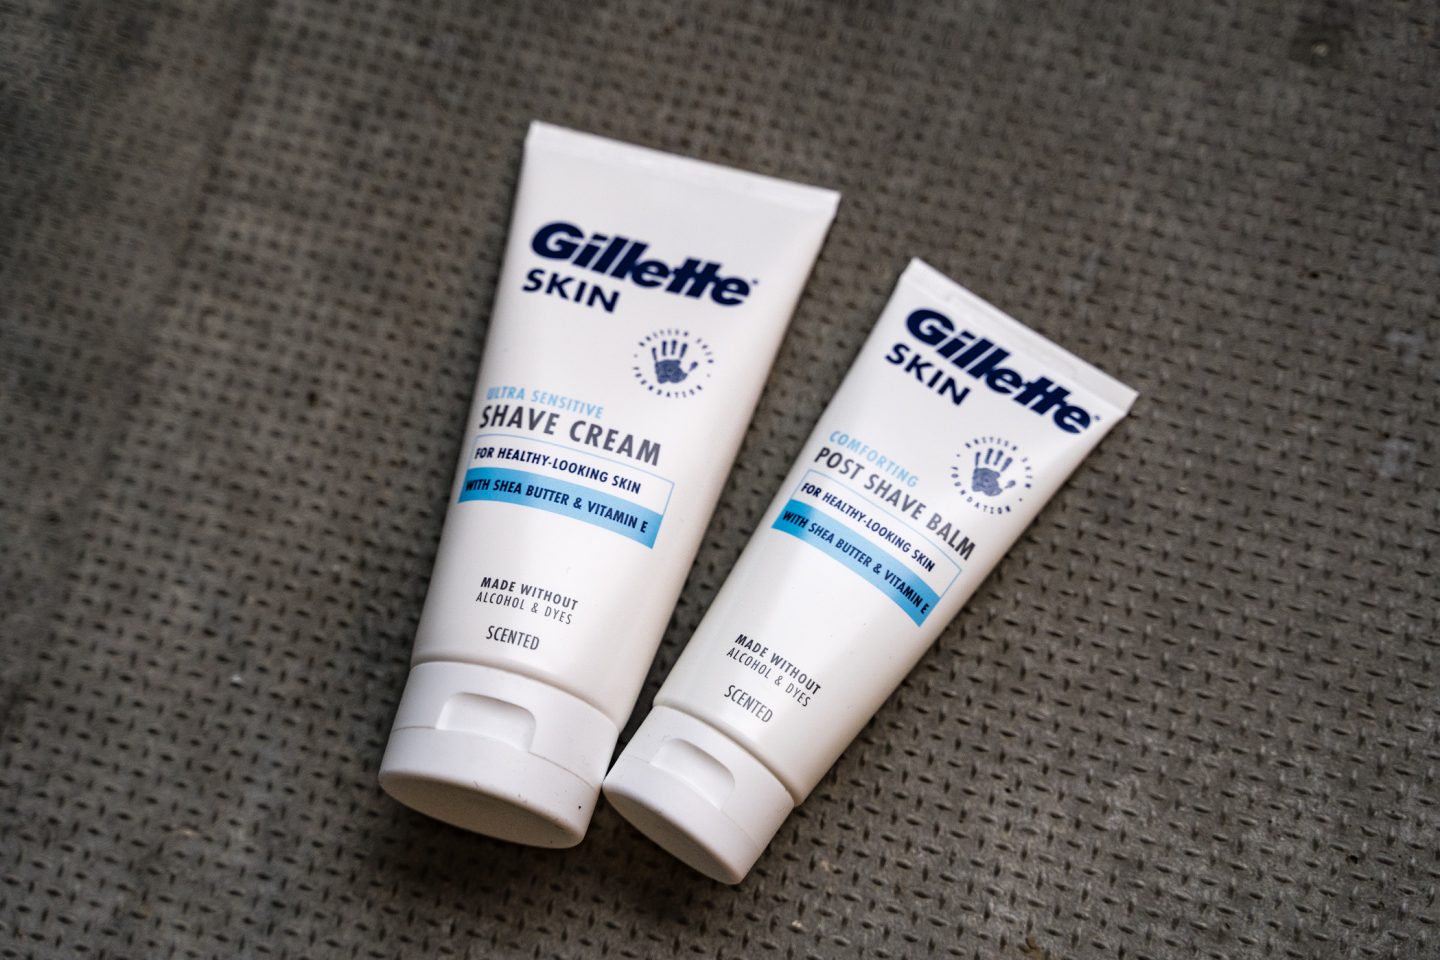 Gillette_SKIN-post_shave1